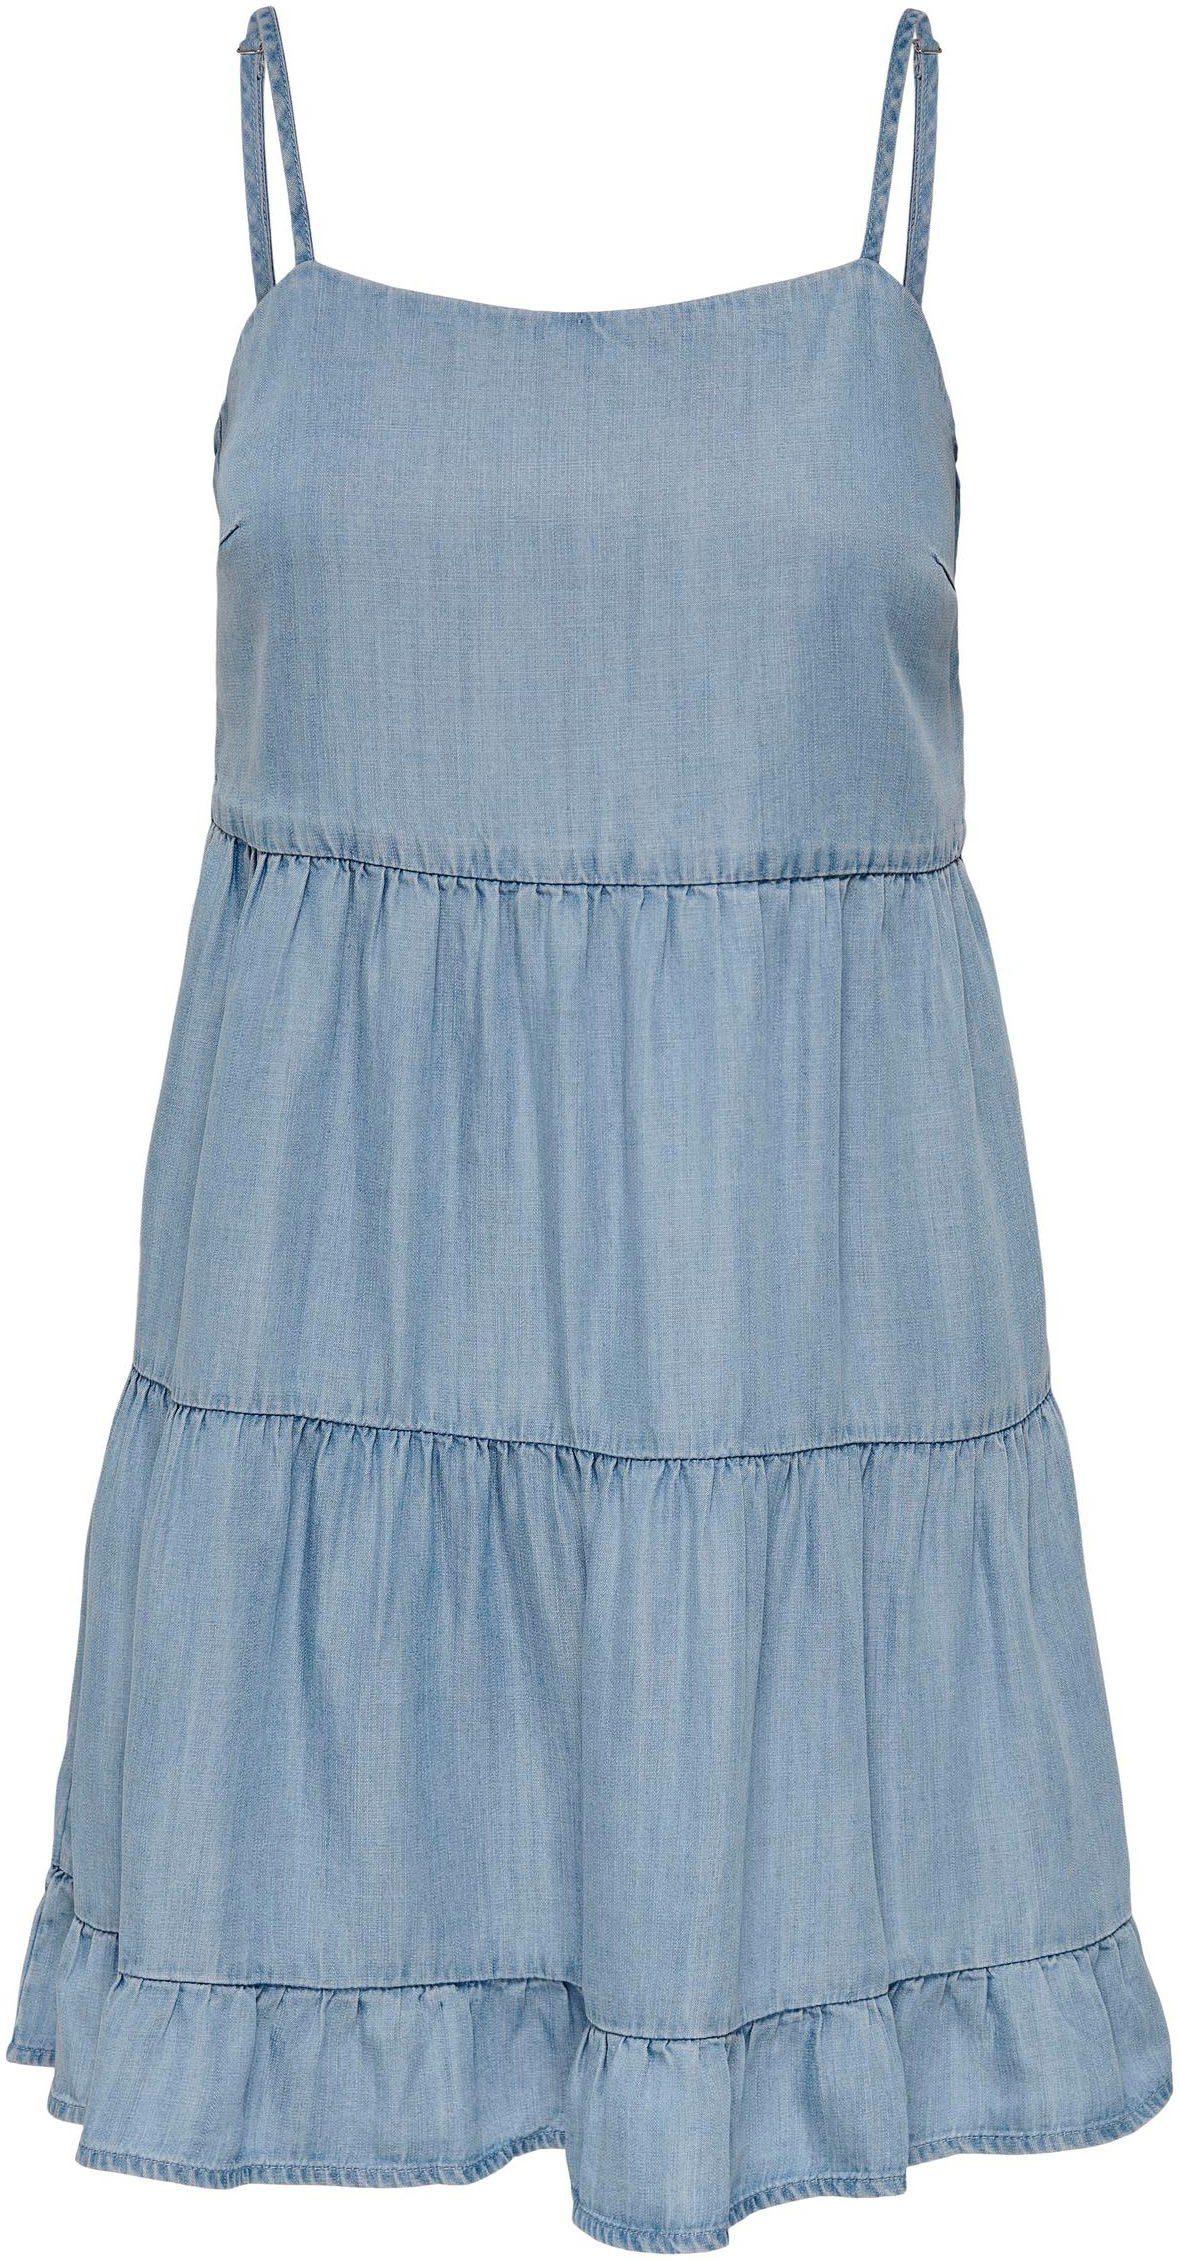 ONLRAGNA Light Jeanskleid DRESS DNM Denim STRAP ONLY Blue